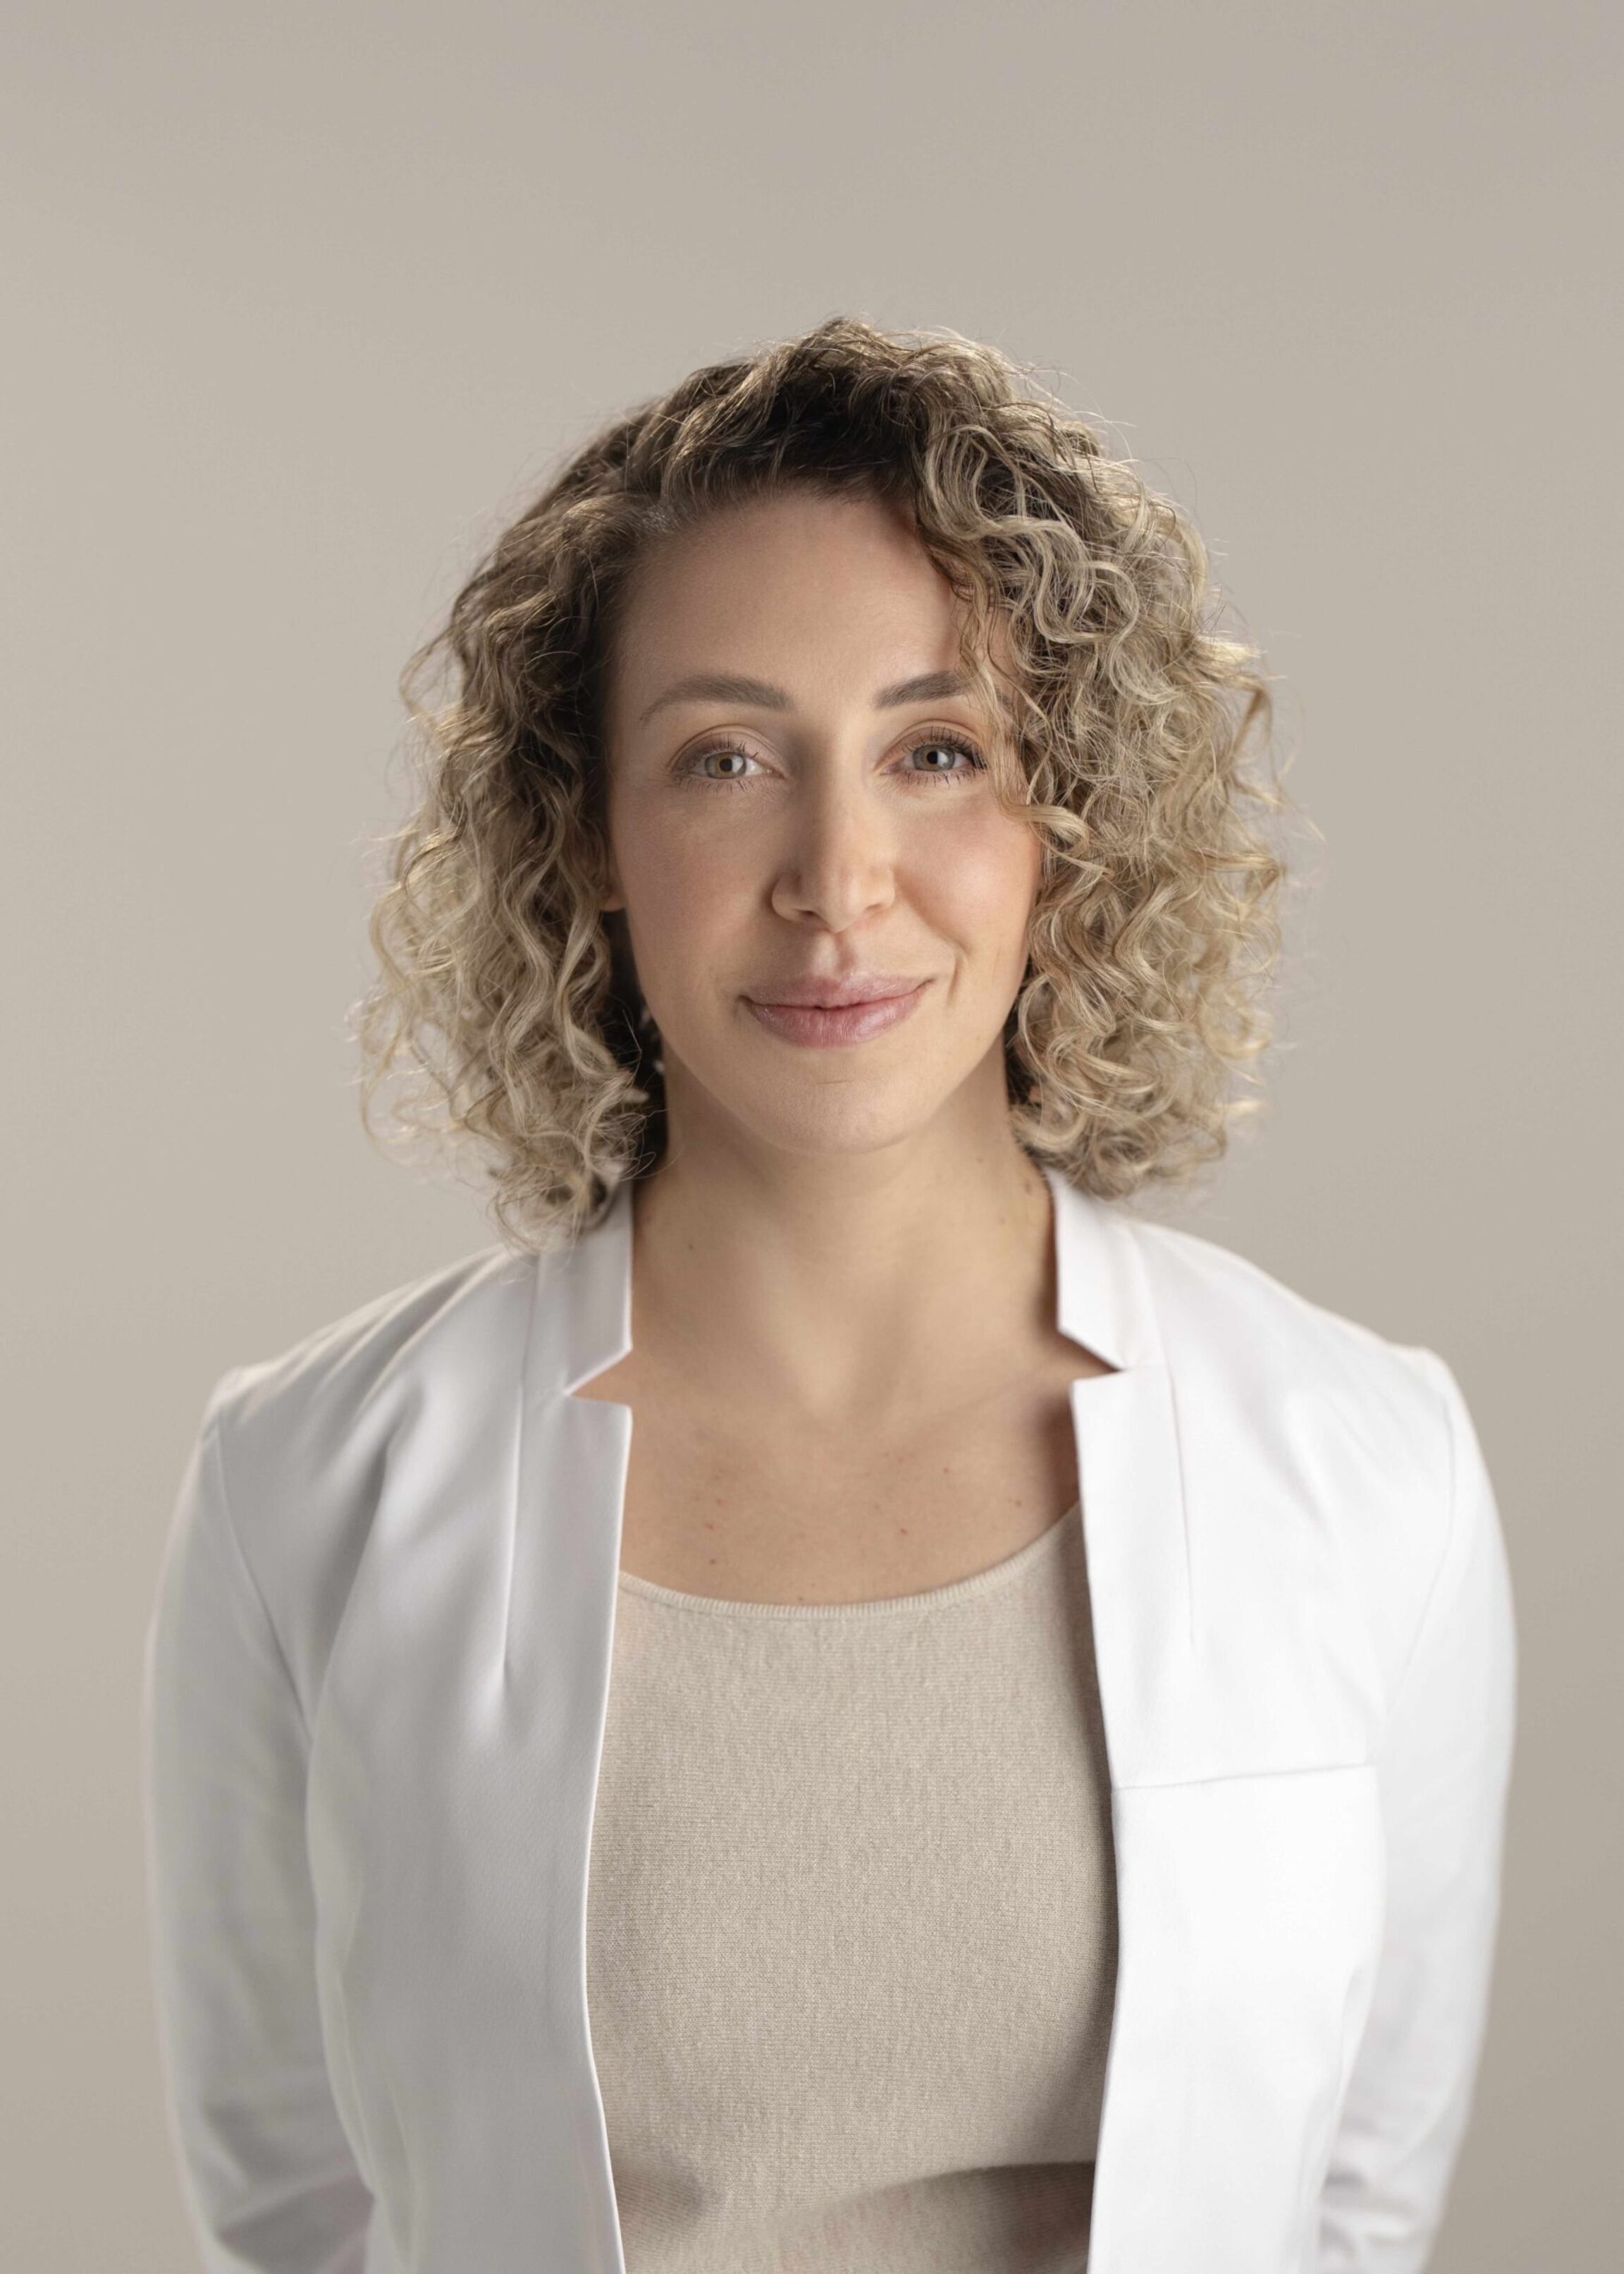 Expert facelift surgeon, Dr. Michelle Sieffert